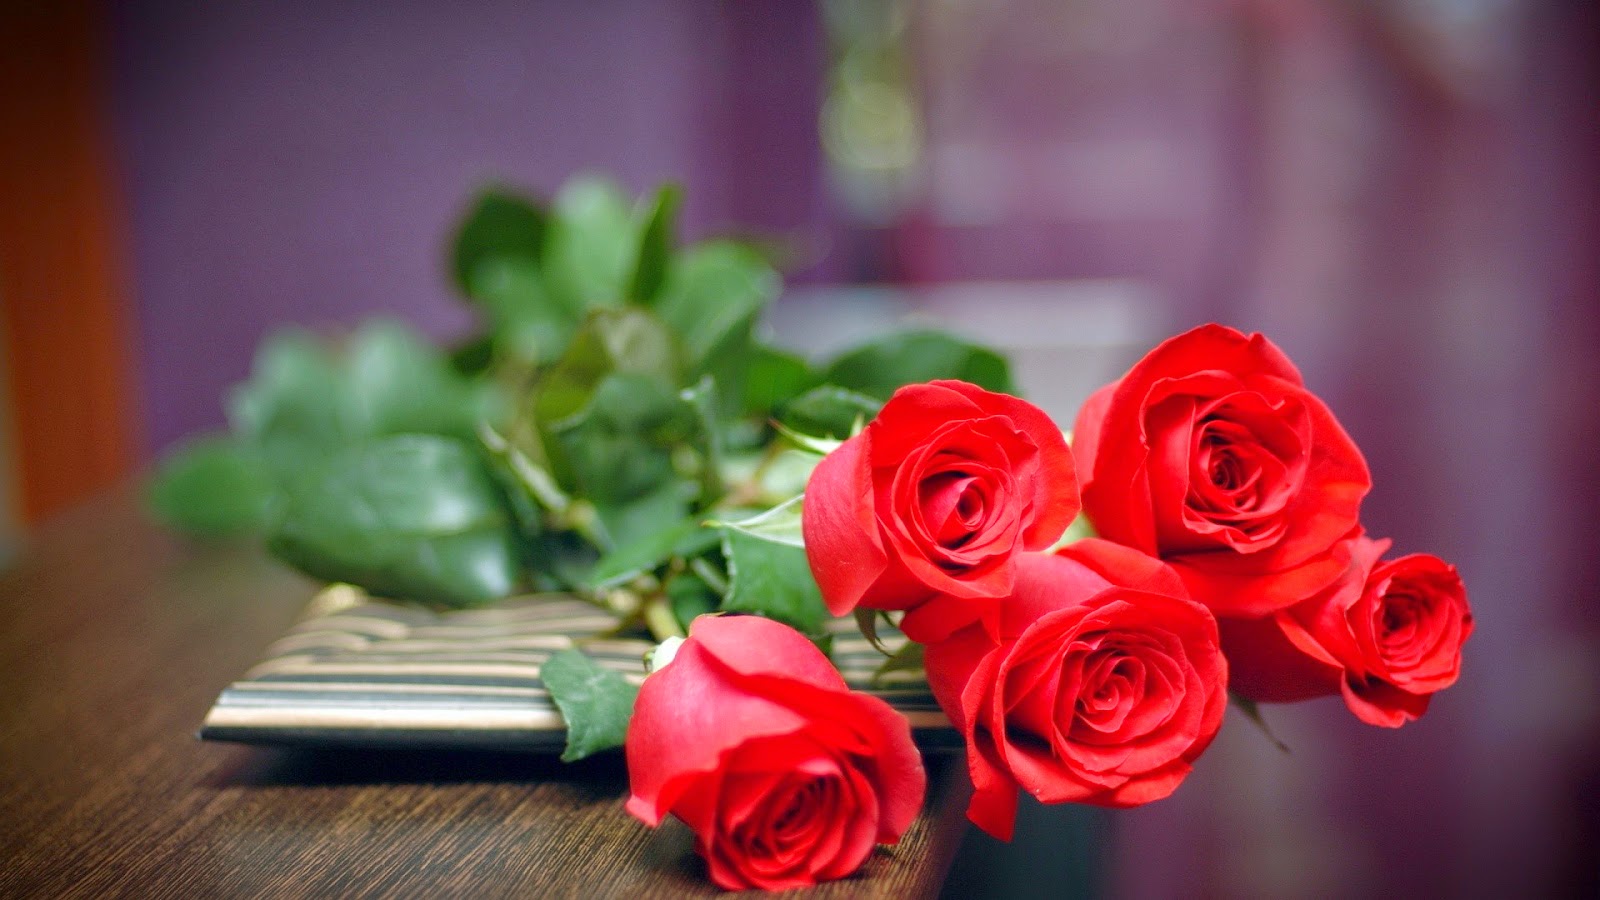 Ý nghĩa hoa hồng đỏ và số lượng hoa nói lên điều gì?